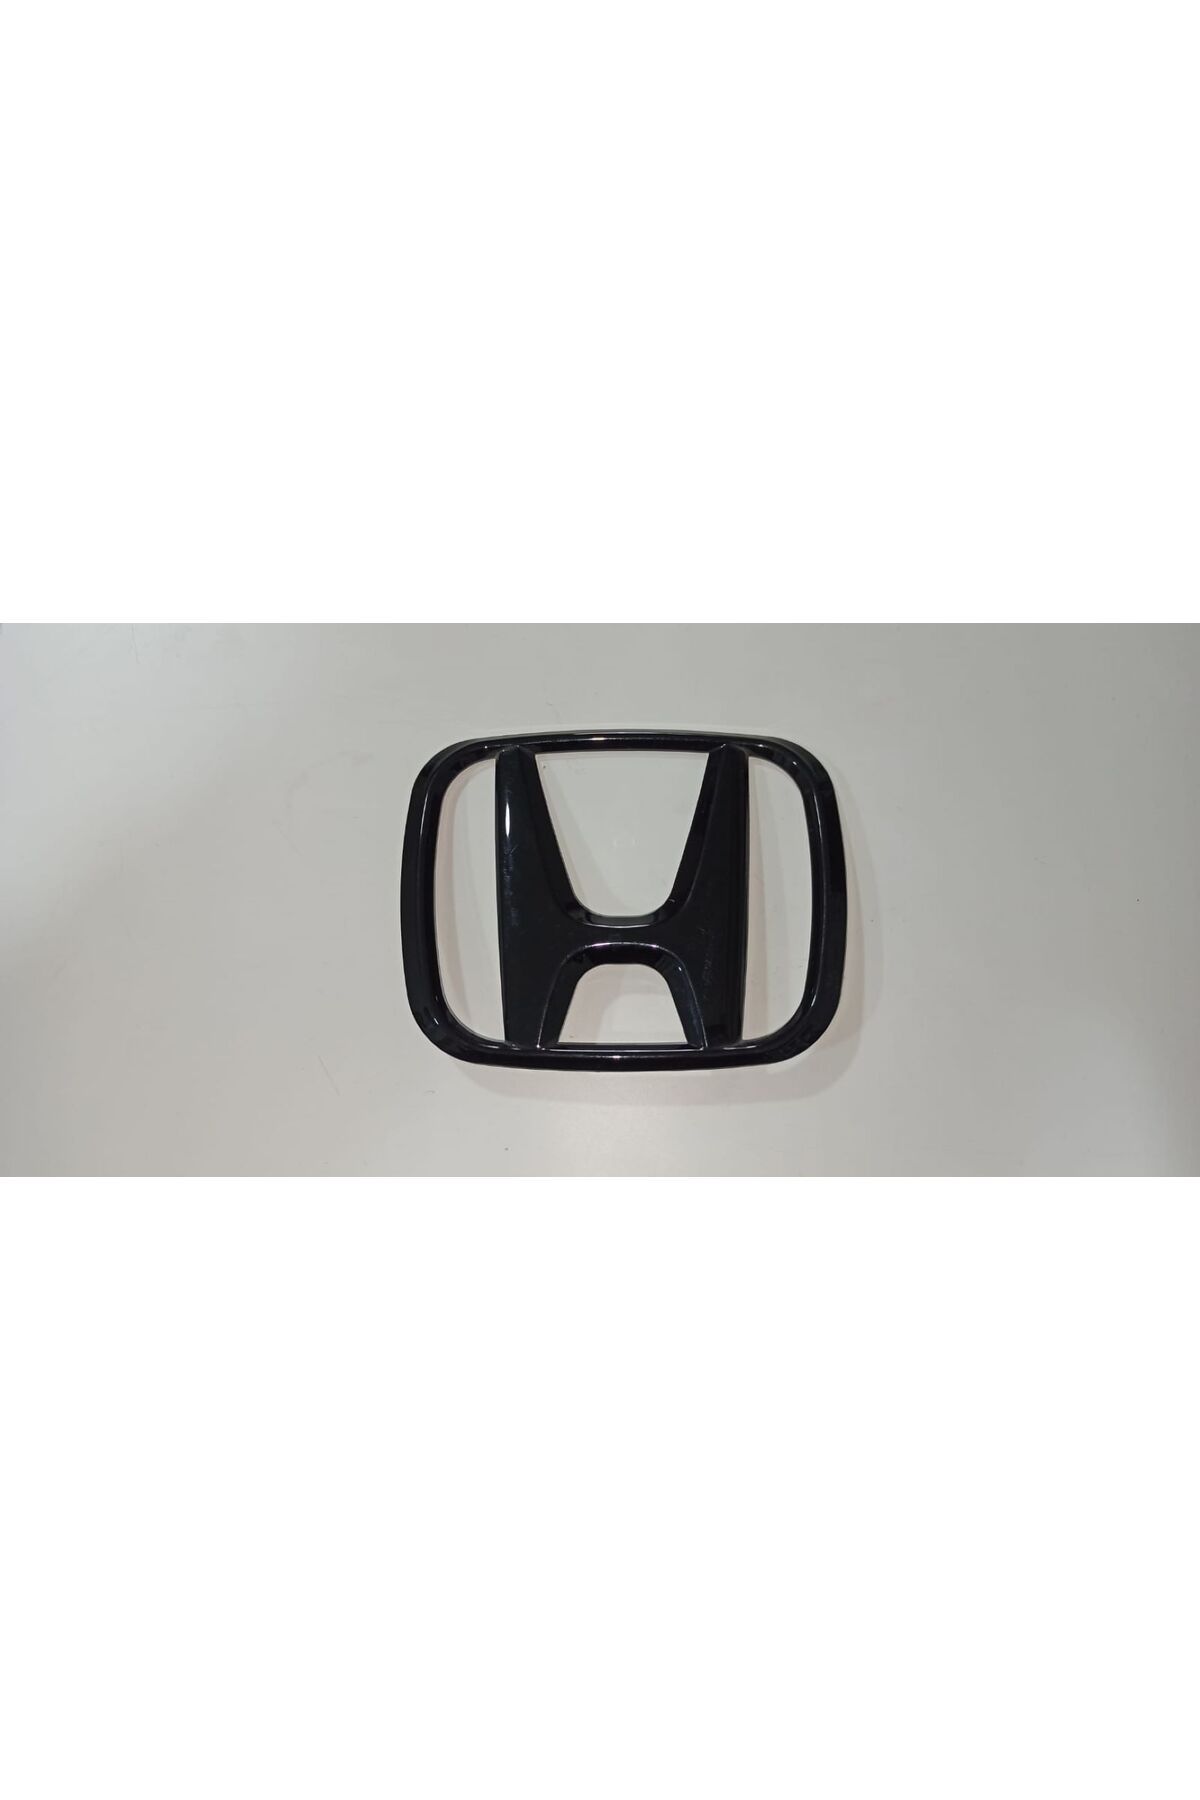 karmakoli Honda Civic FC5 Ön Panjur Honda Logosu Piano Black